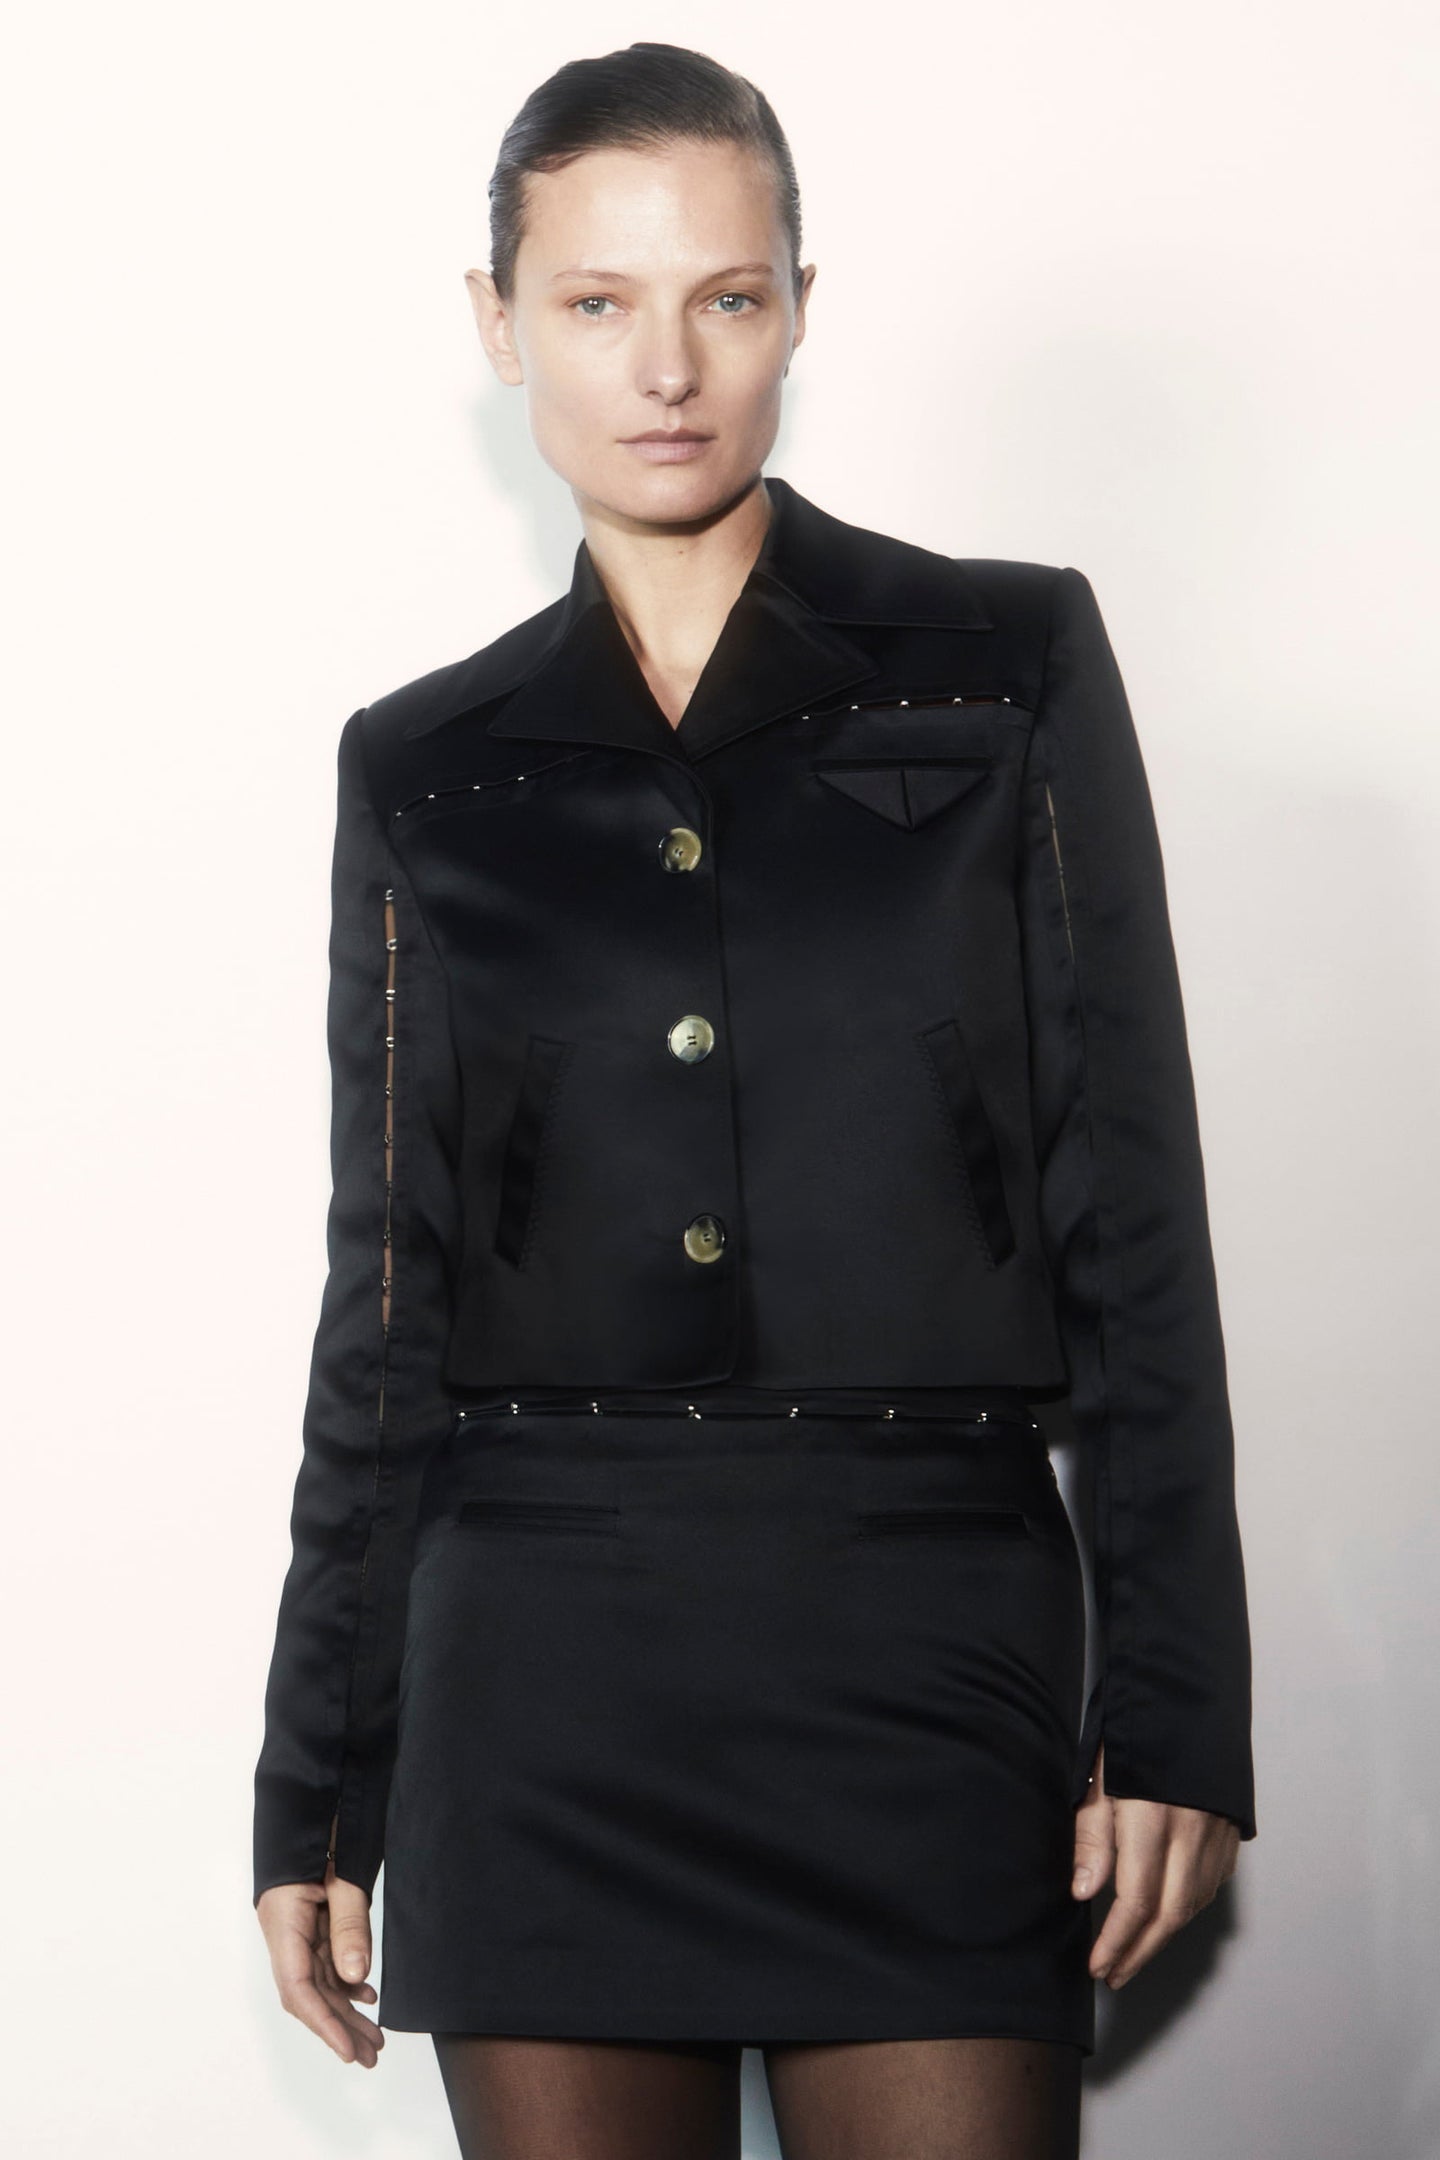 Model in black Nika jacket